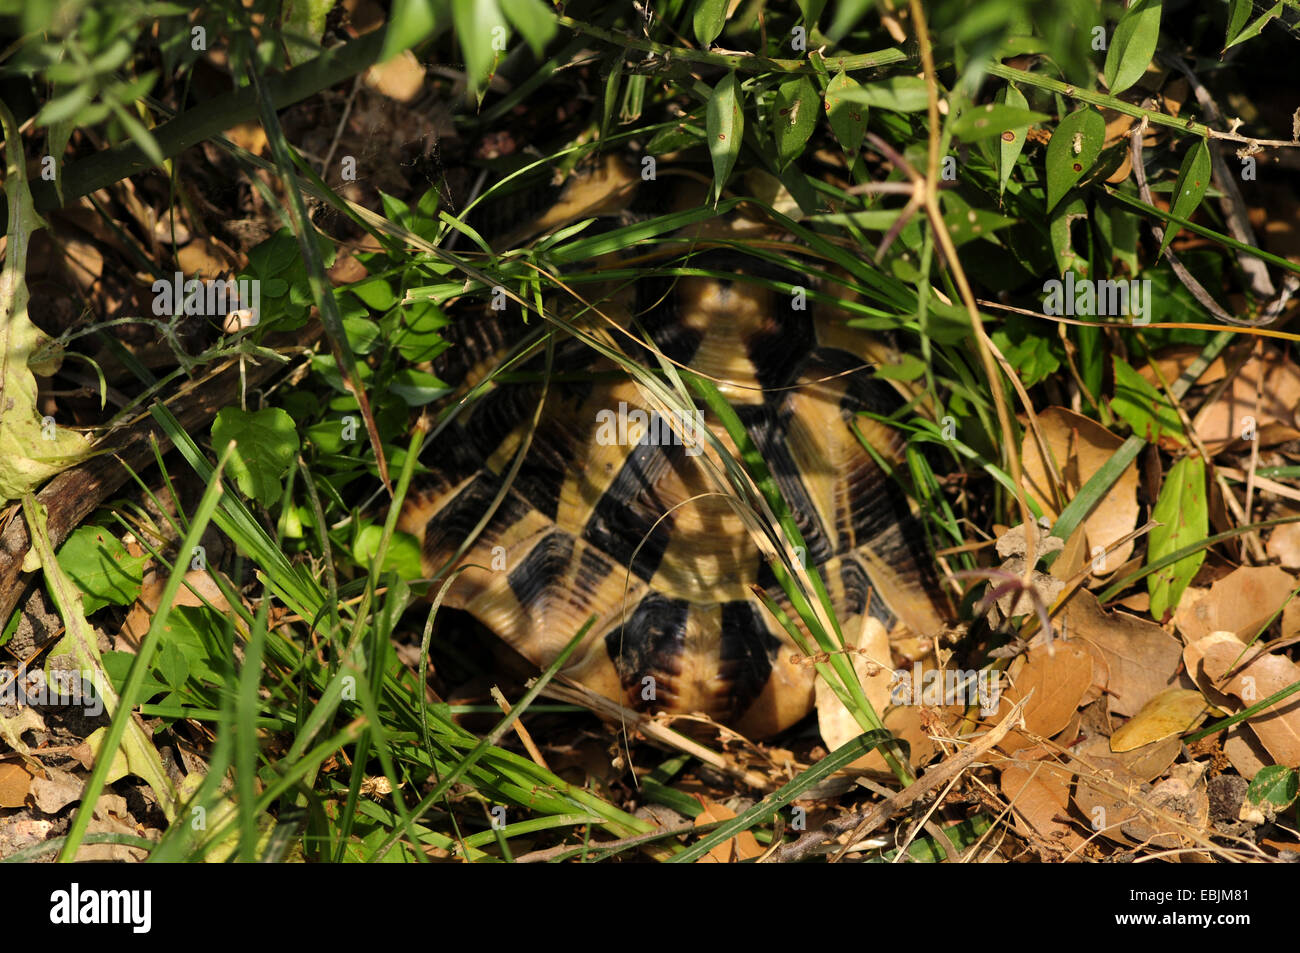 Hermanns Schildkröte, Griechische Schildkröte, Boettgers Schildkröte (Testudo Hermanni Boettgeri), verborgen unter einem Busch, Griechenland, Mazedonien Stockfoto